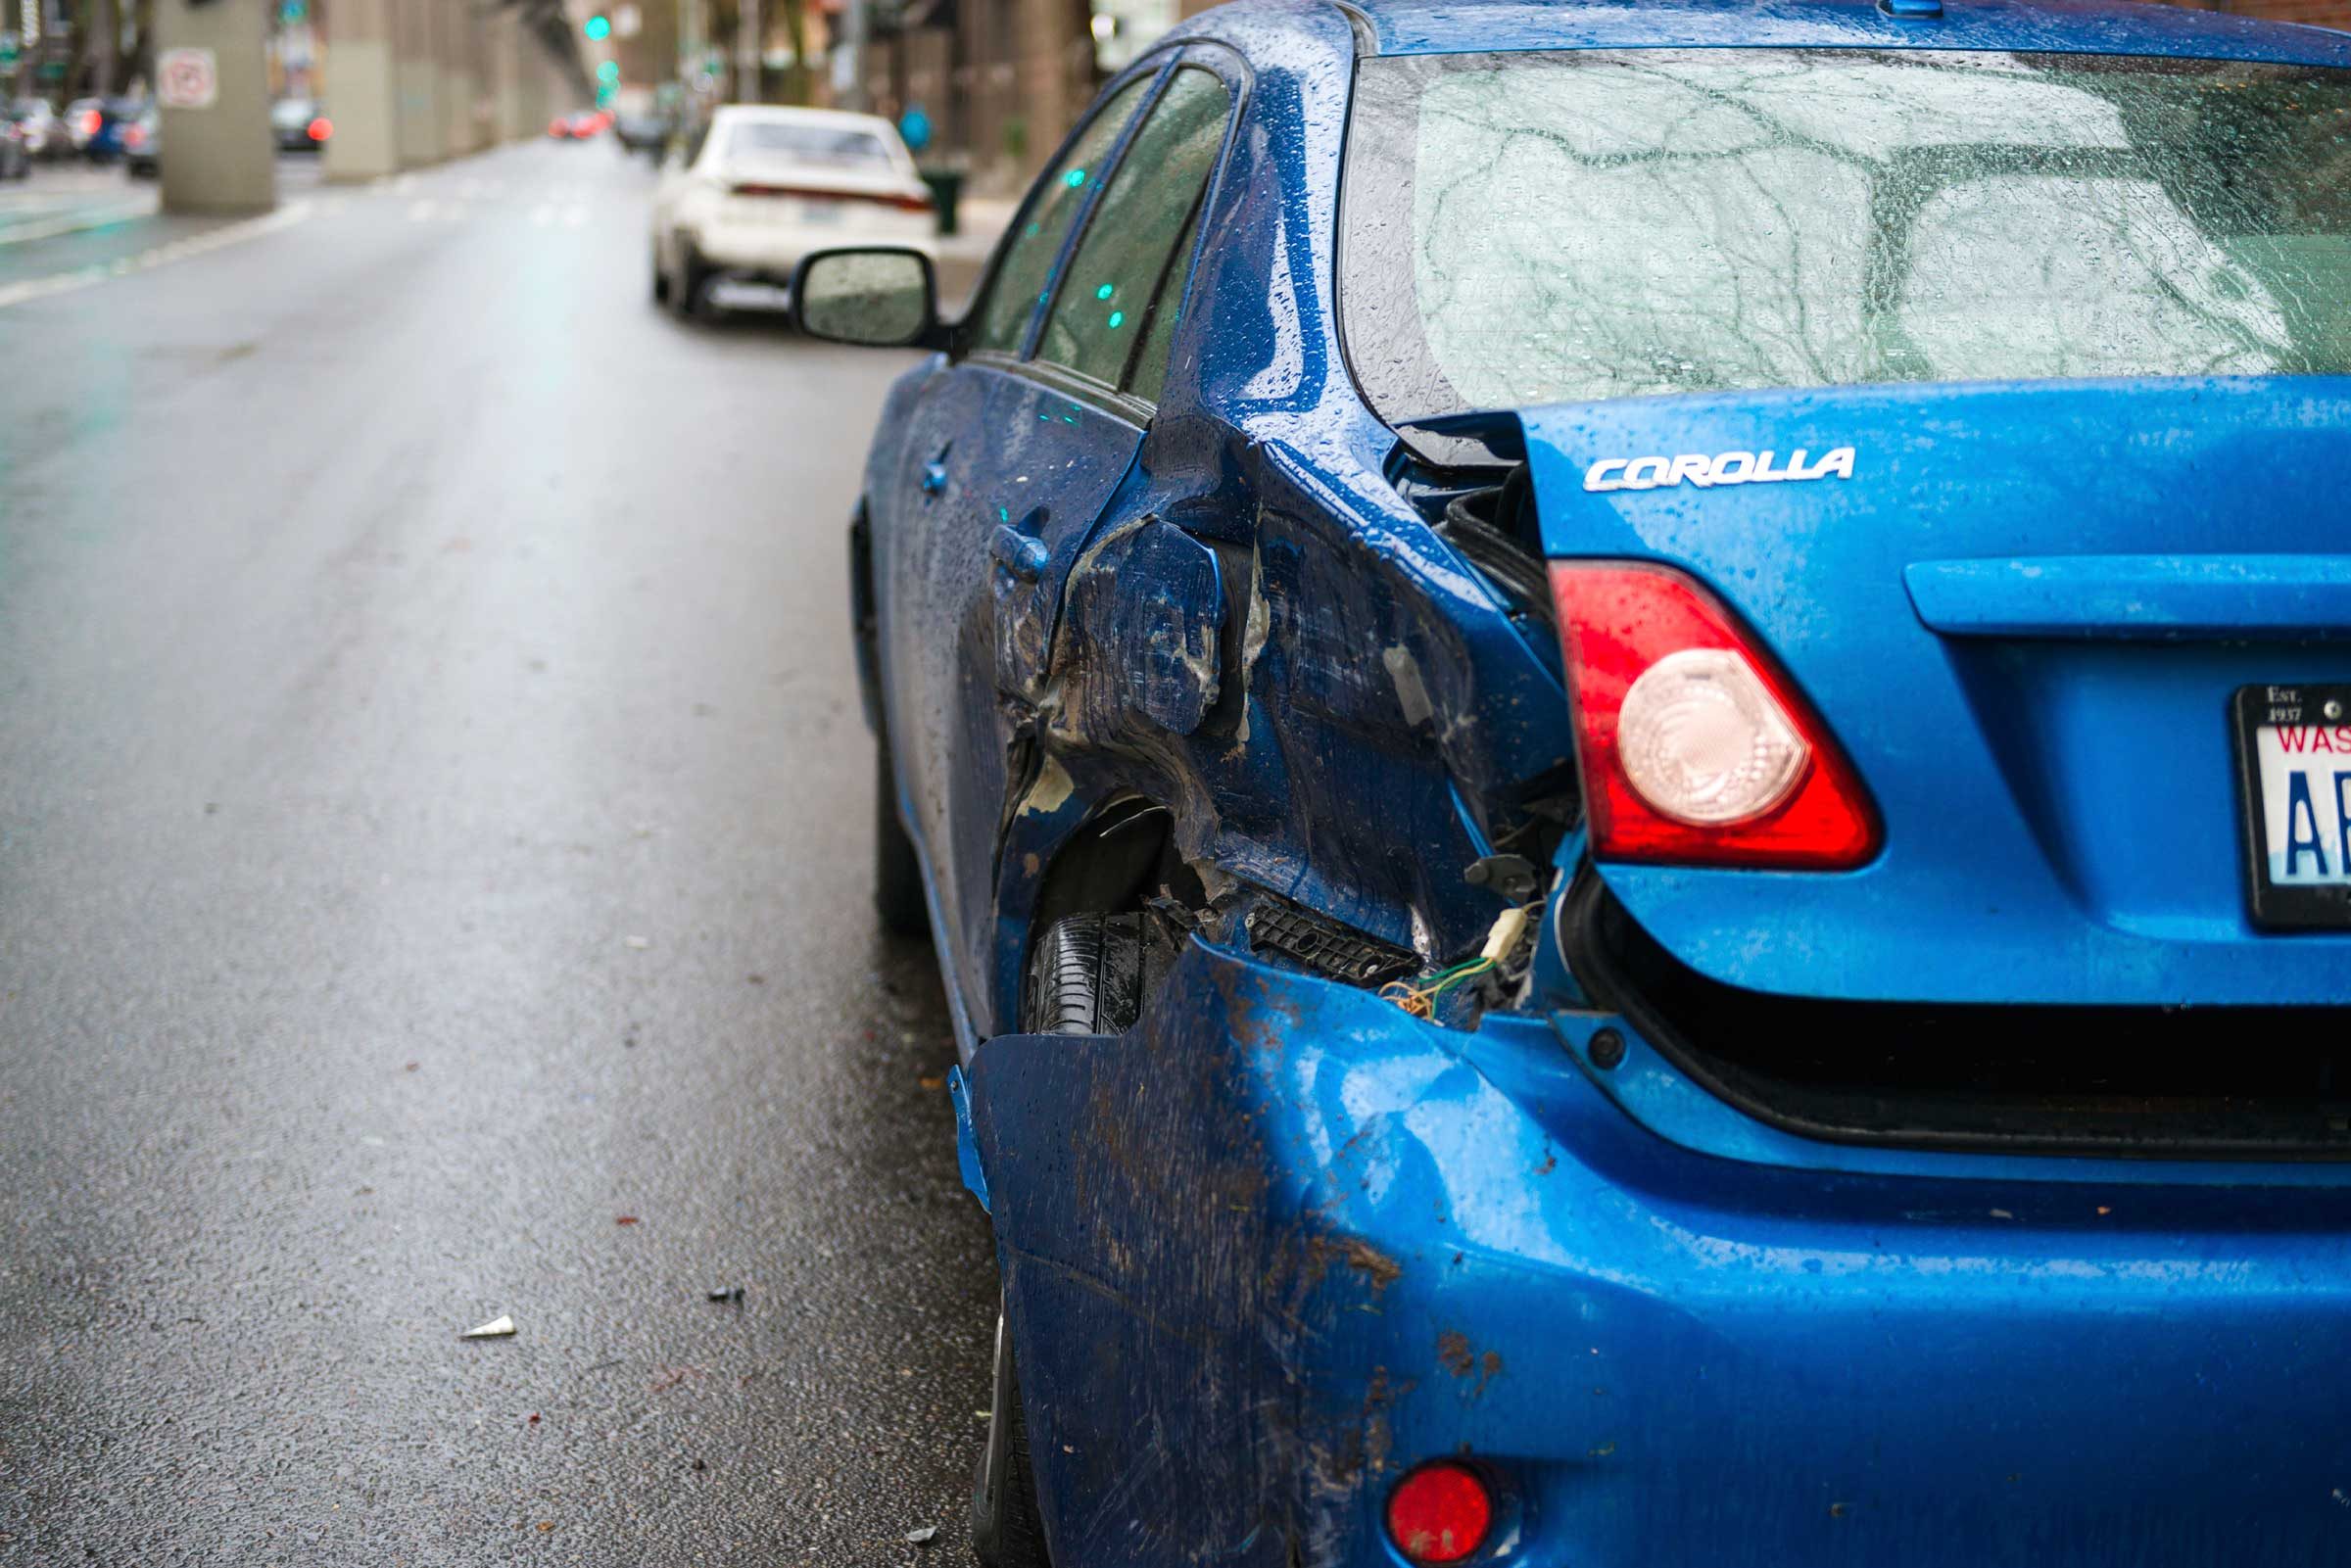 Reclamaciones de seguros de automóviles:15 de las excusas más extrañas jamás presentadas 